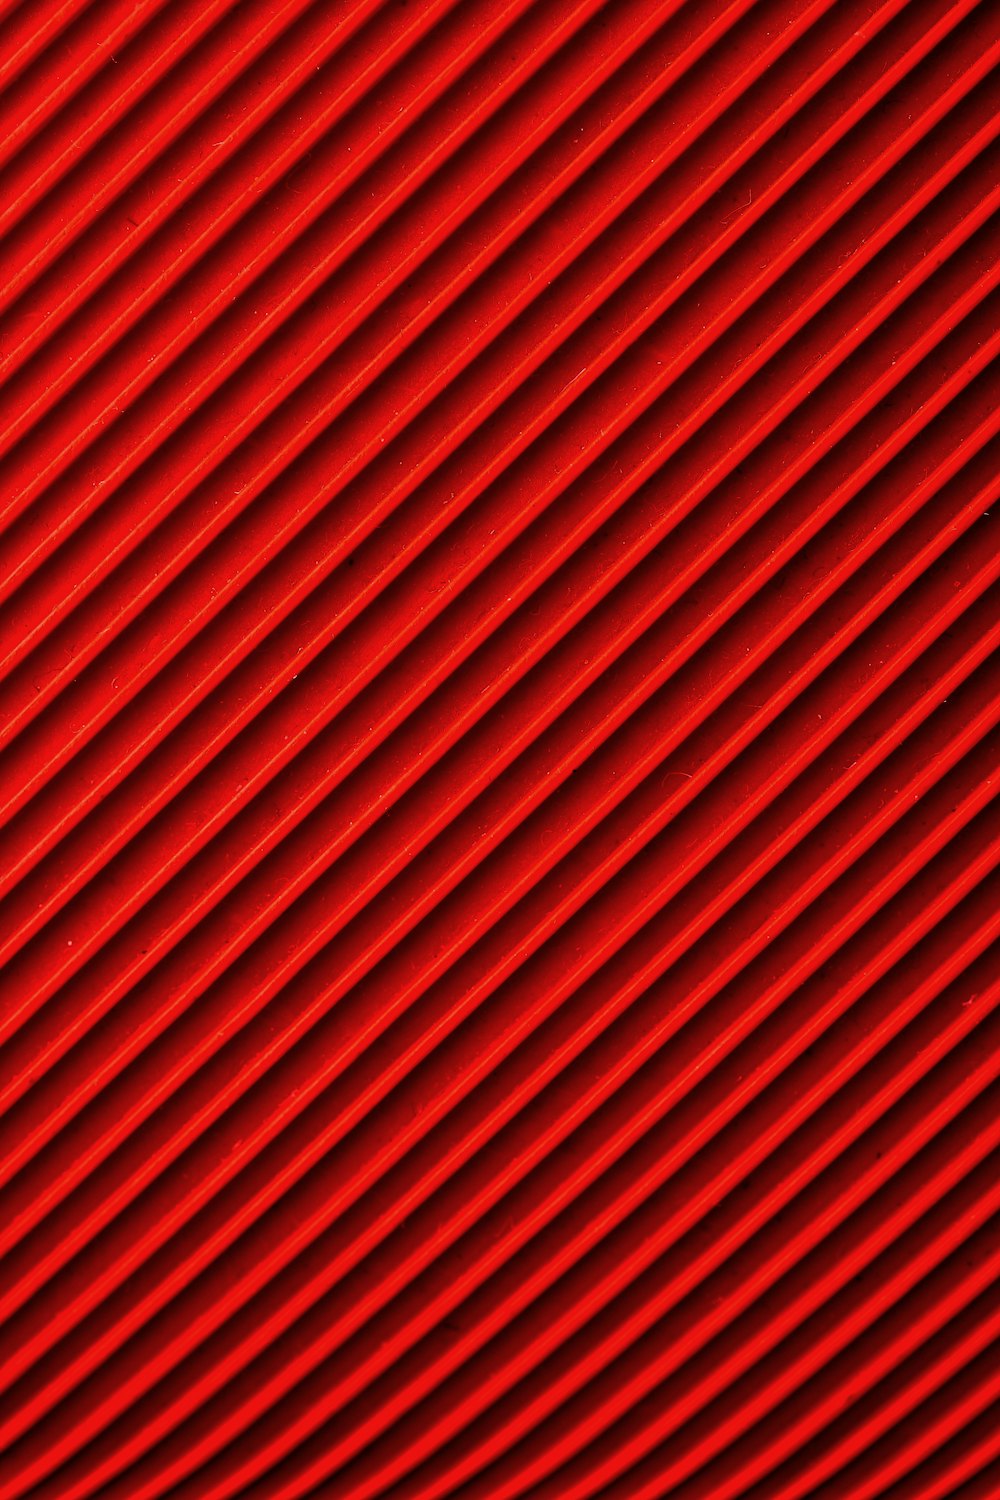 rot-schwarz gestreiftes Textil